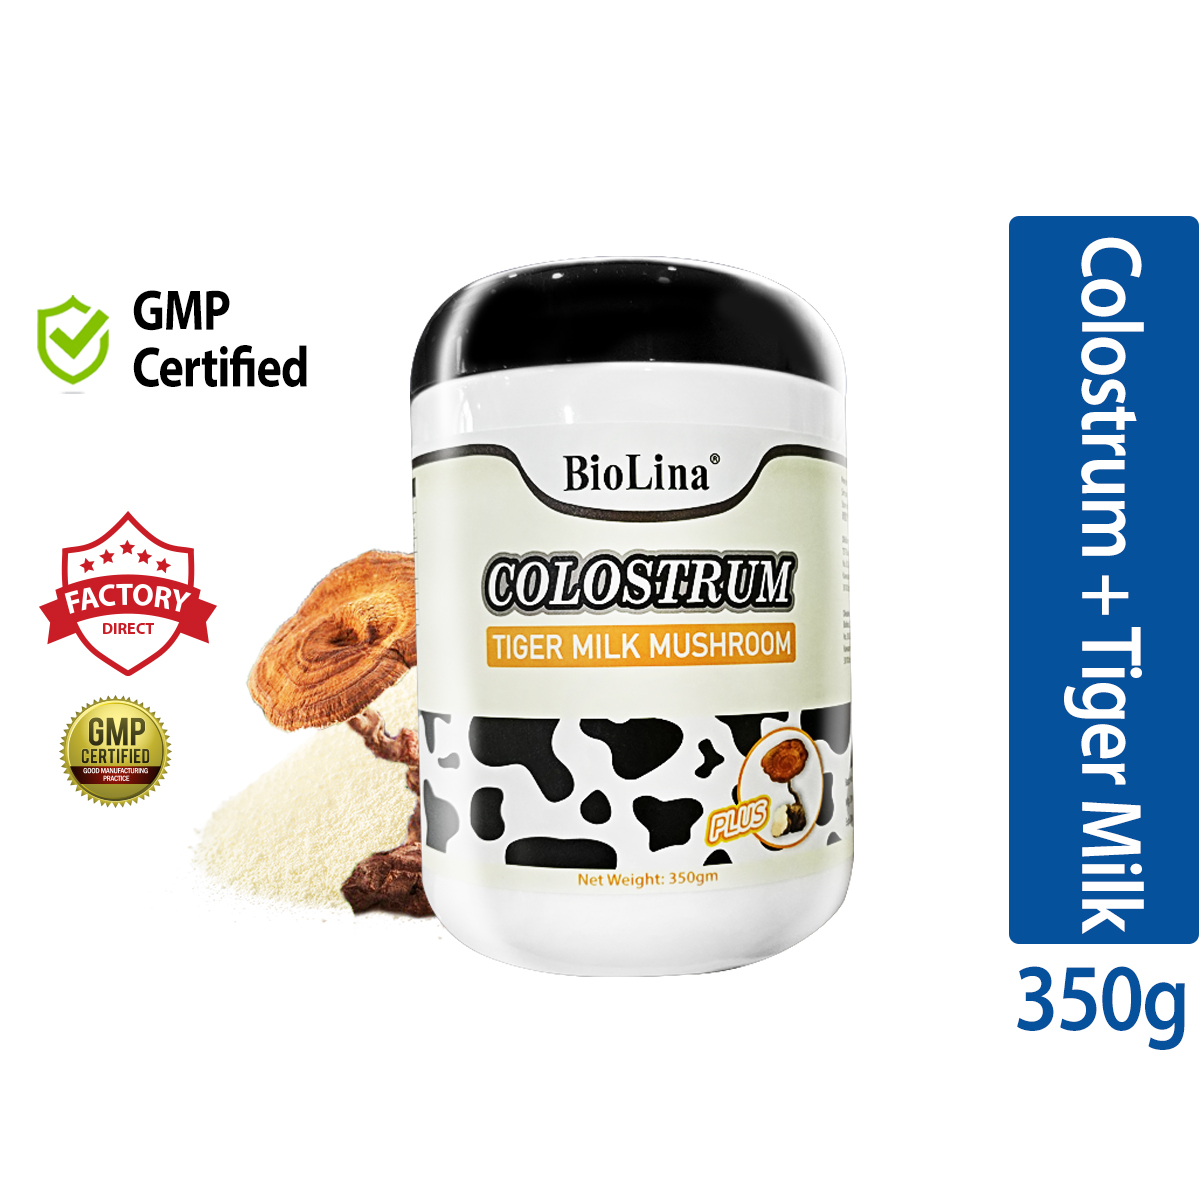 BioLina Colostrum With Tiger Milk Mushroom (350g)